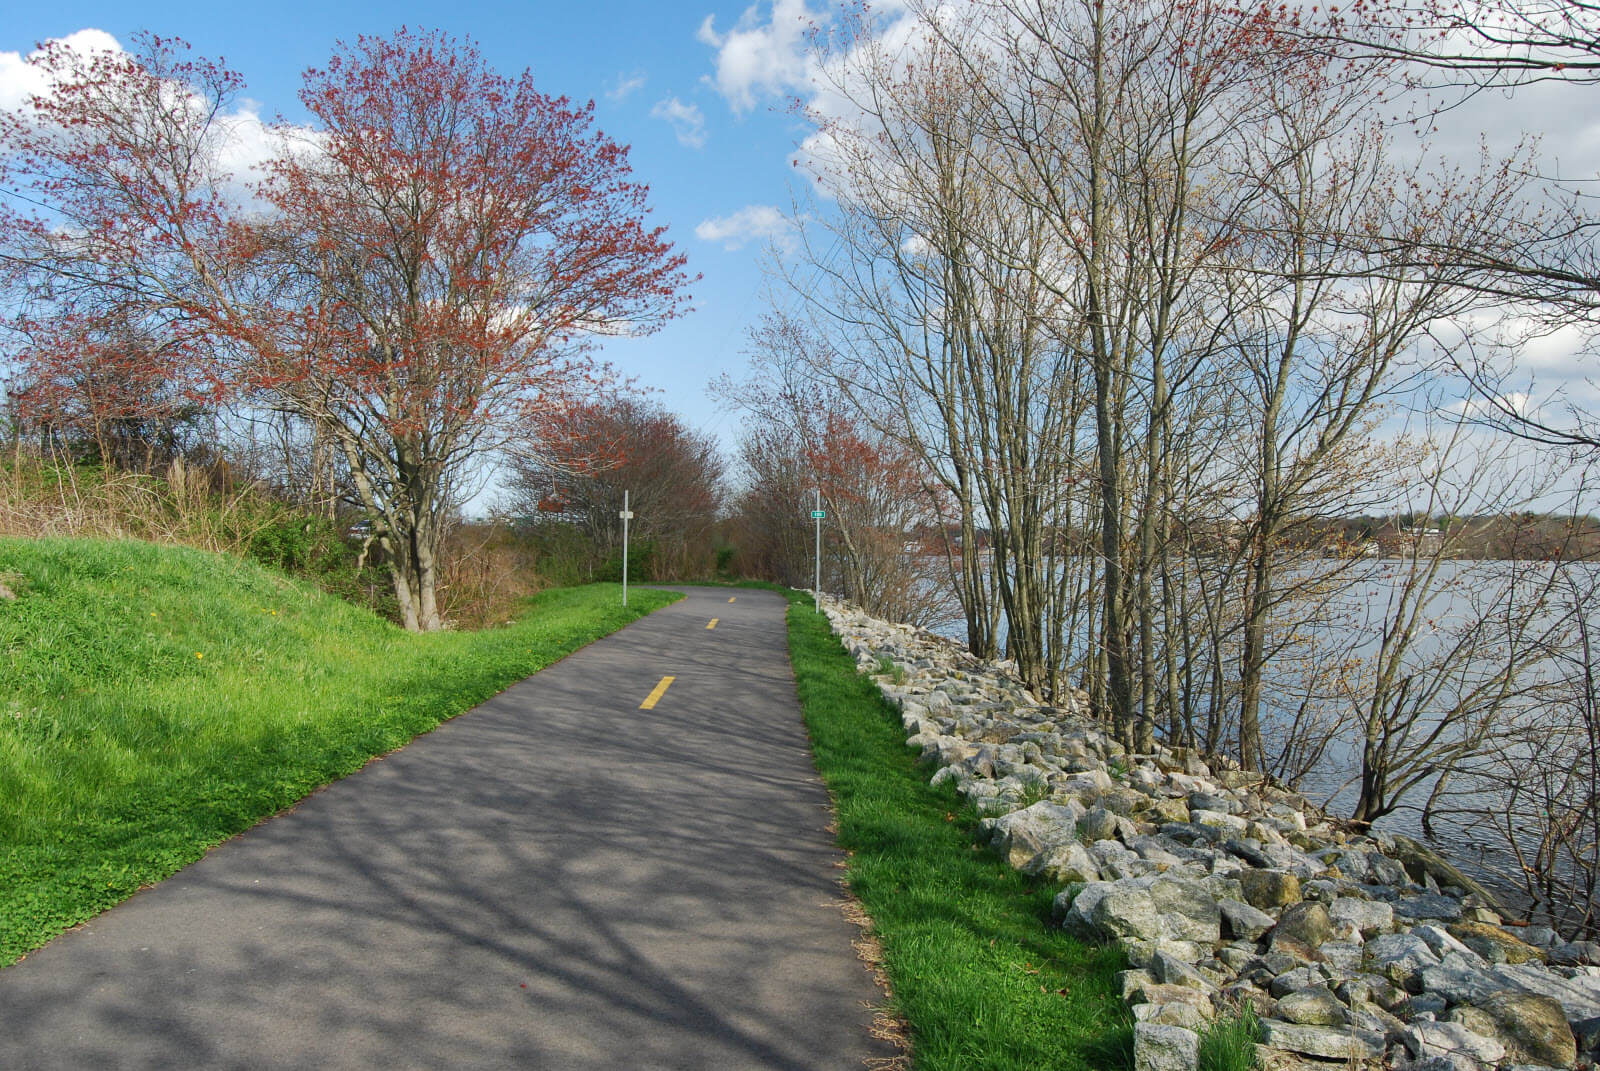 Велосипедная дорожка вдоль пруда. США, штат Массачусетс. Автор фото Marcbela